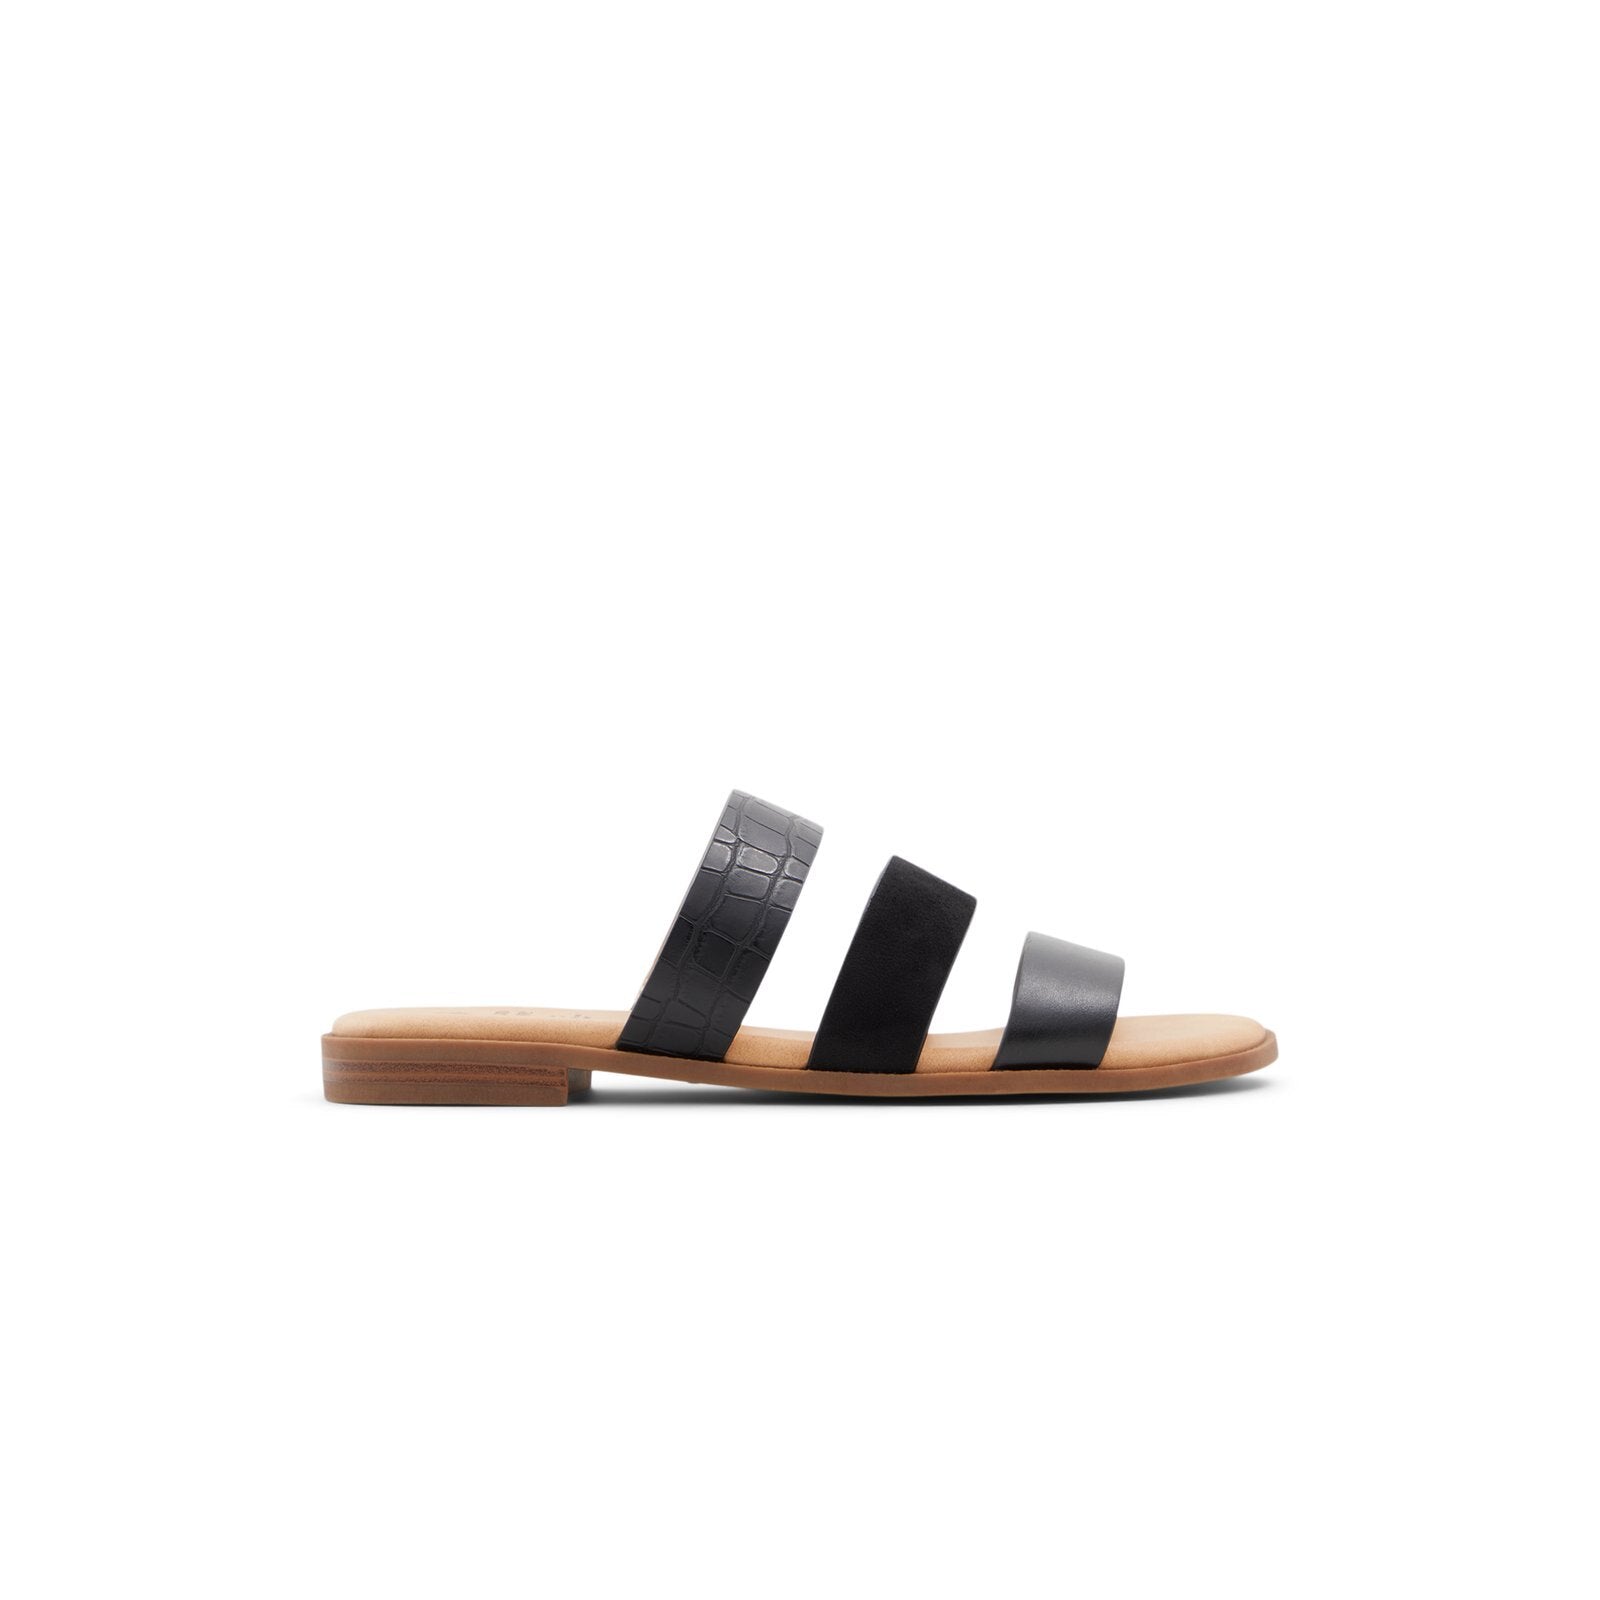 Belize / Flat Sandals Women Shoes - Black - CALL IT SPRING KSA